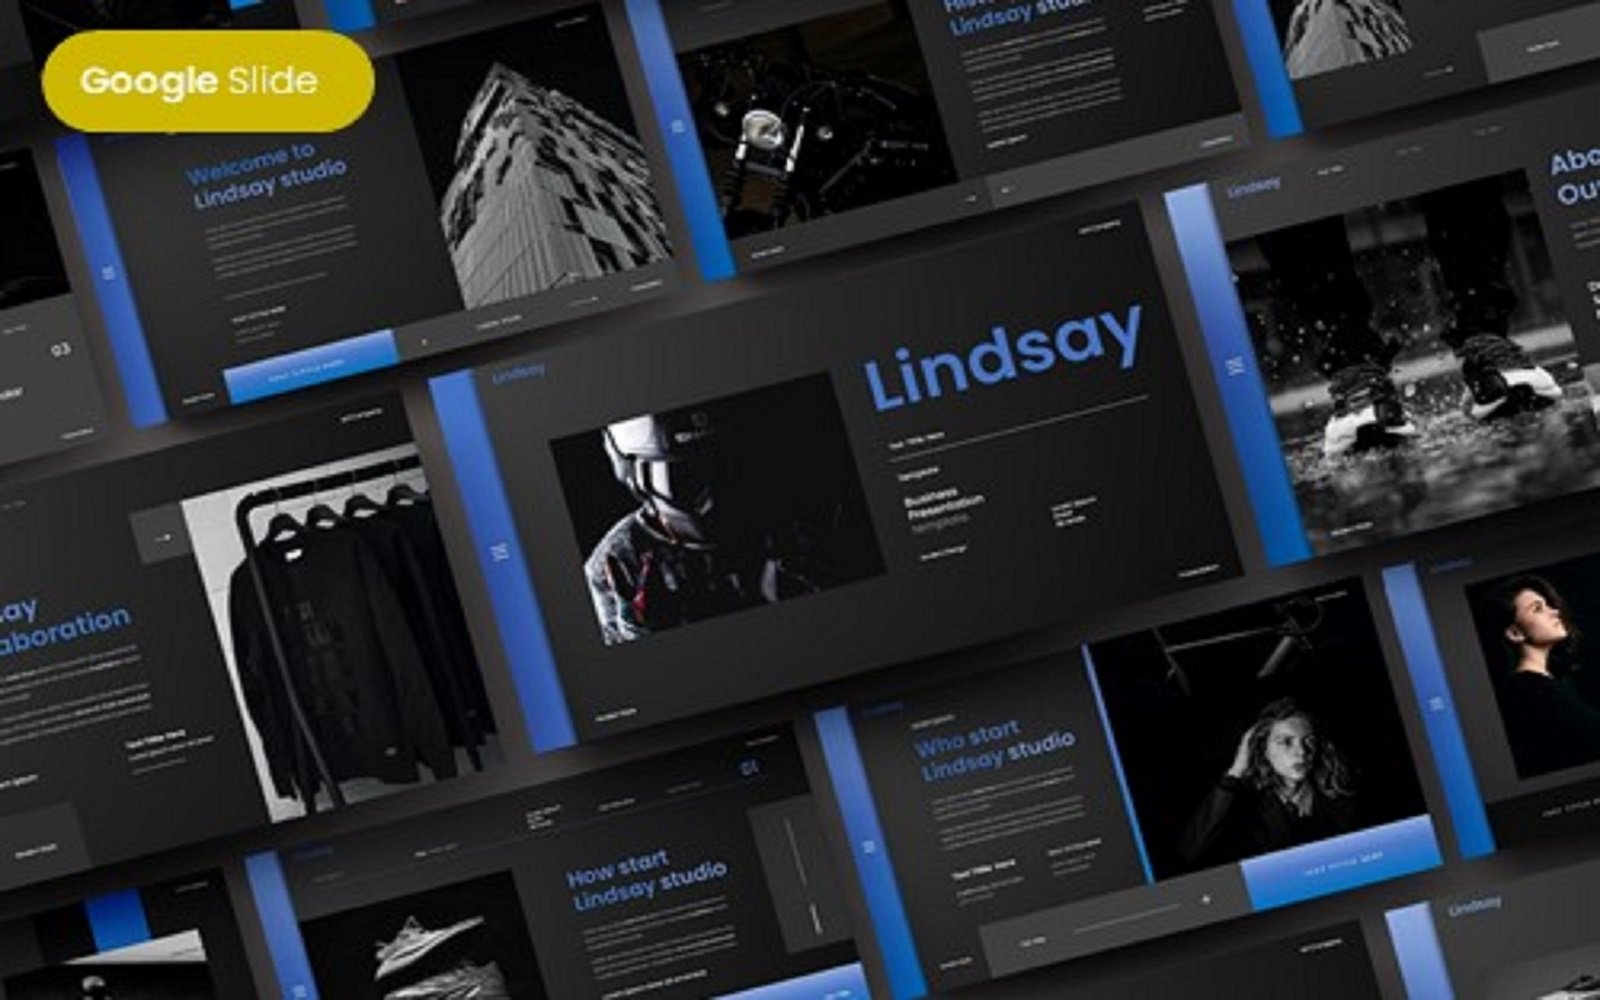 Lindsay - Business Google Slide Template